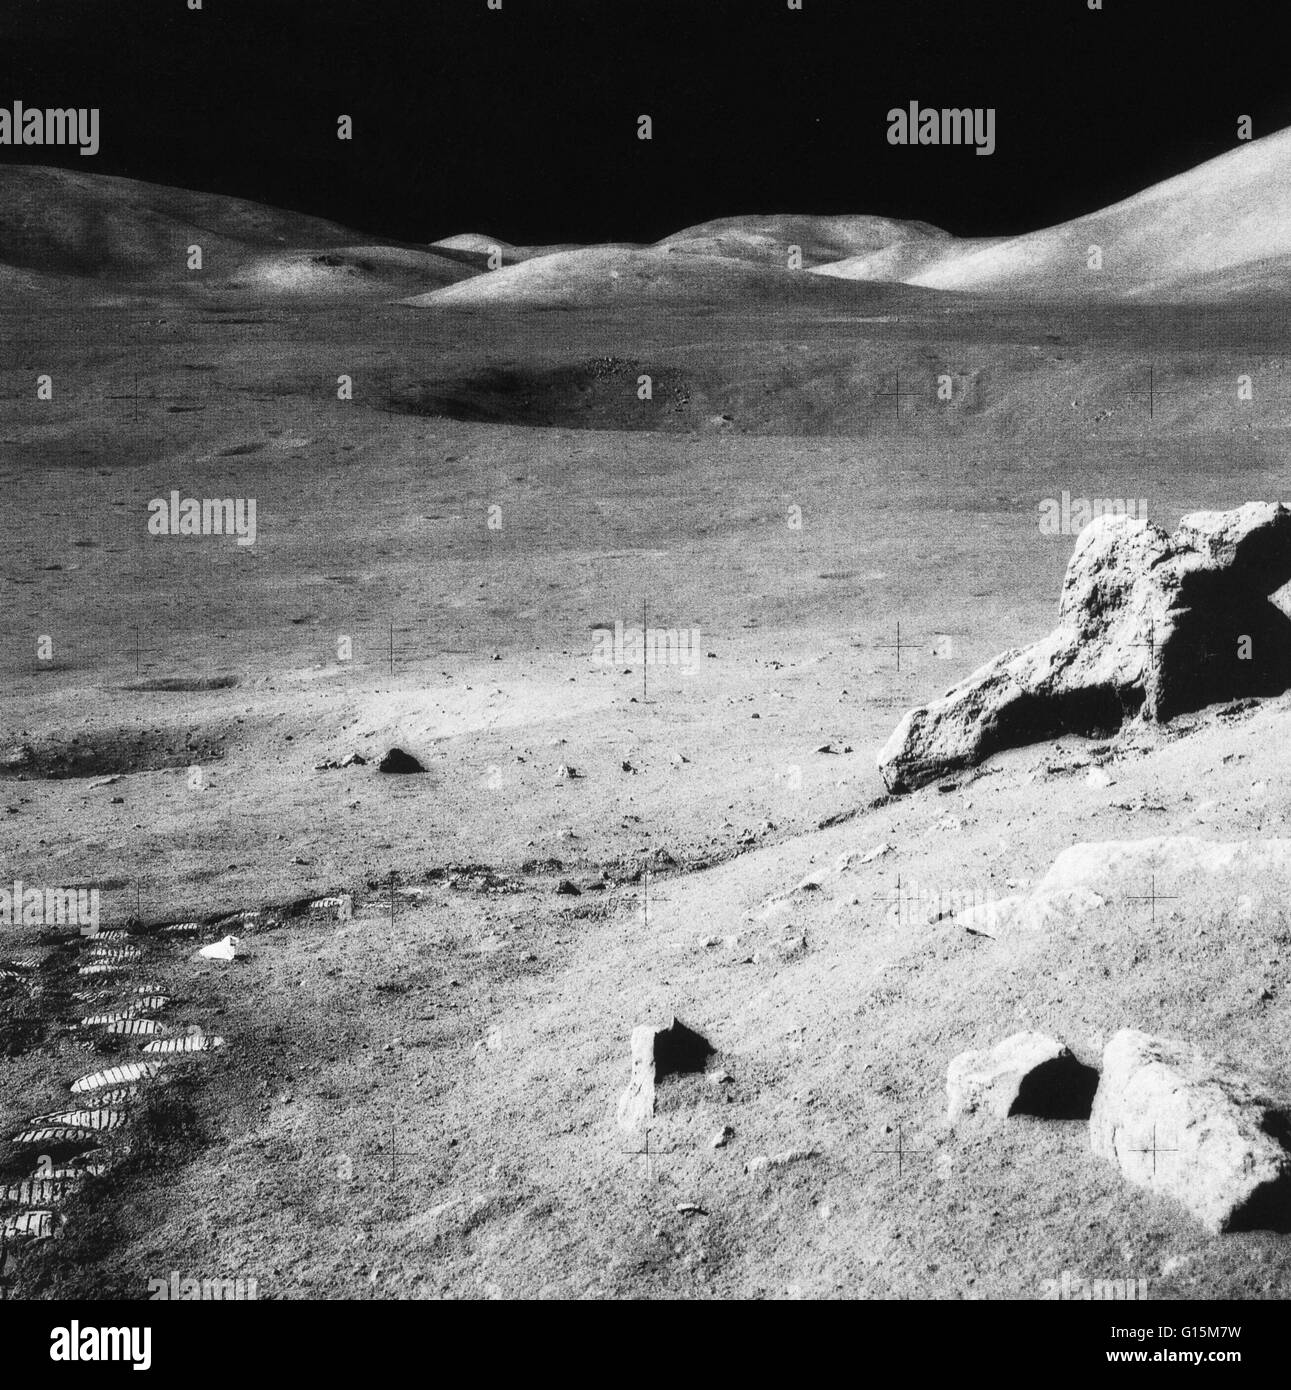 Paysage lunaire. La vallée de Taurus-Littrow et le massif du Nord (en haut à droite) sur la Lune. C'était la dernière photo prise à la surface de la lune, à la suite de la mission Apollo 17 de 1972 (7-19 décembre). Empreintes et une jetée rock collectio Banque D'Images